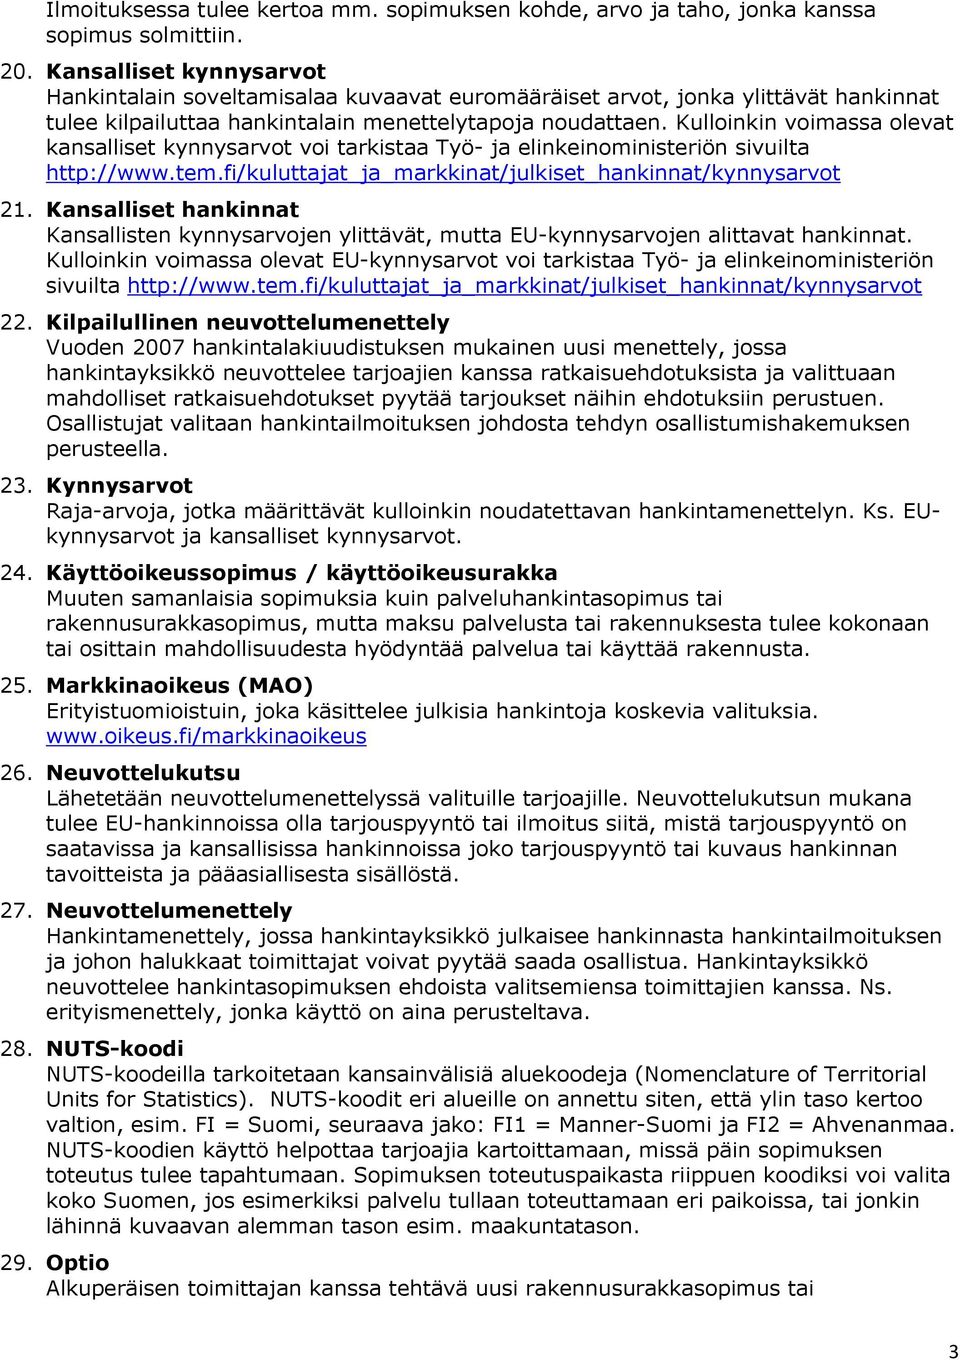 Kulloinkin voimassa olevat kansalliset kynnysarvot voi tarkistaa Työ- ja elinkeinoministeriön sivuilta http://www.tem.fi/kuluttajat_ja_markkinat/julkiset_hankinnat/kynnysarvot 21.